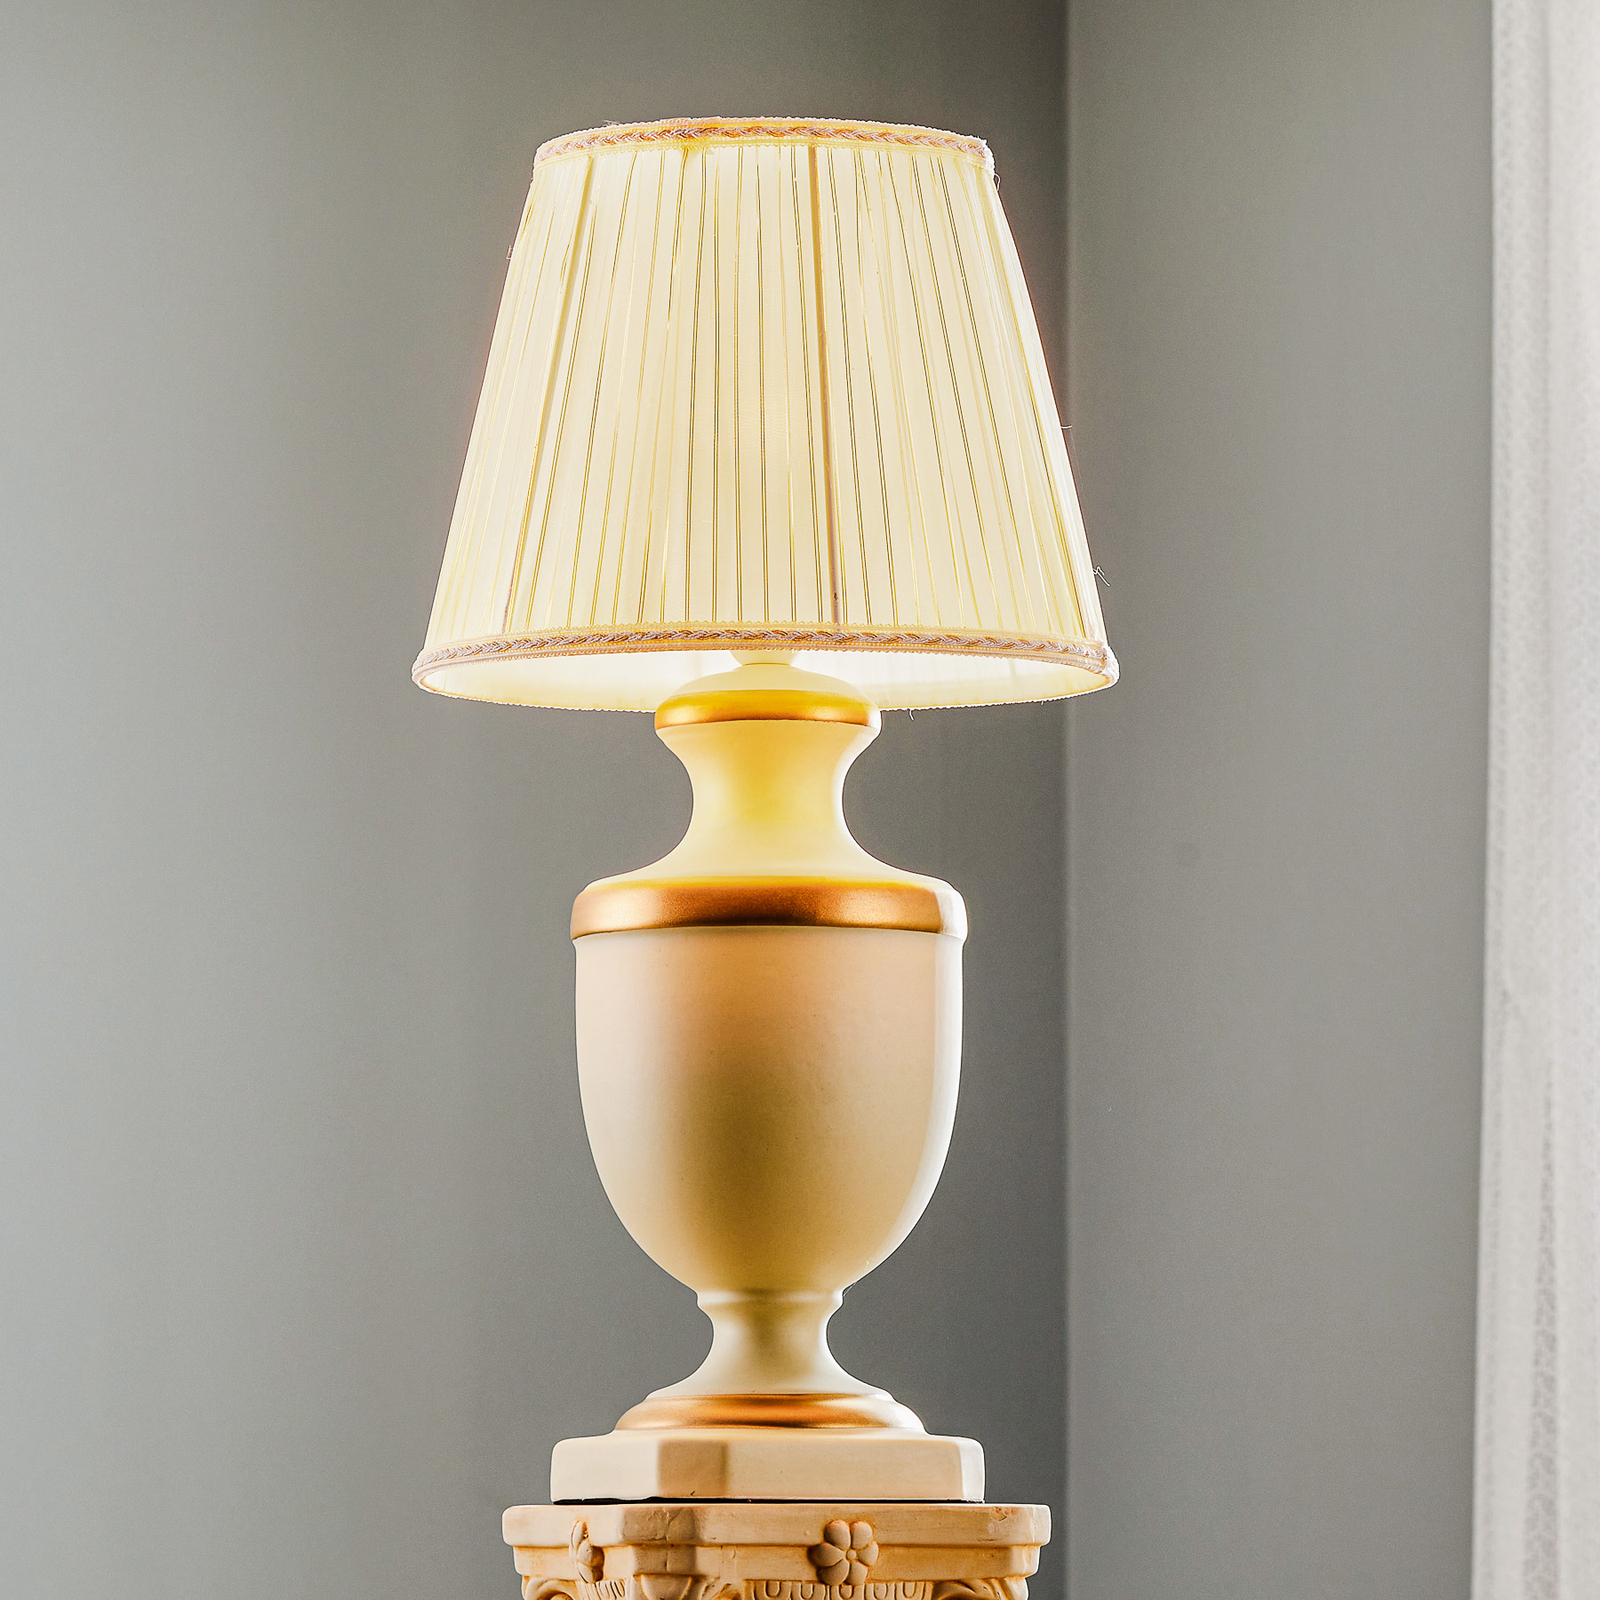 Bordlampe Imperial av keramikk, høyde 56 cm